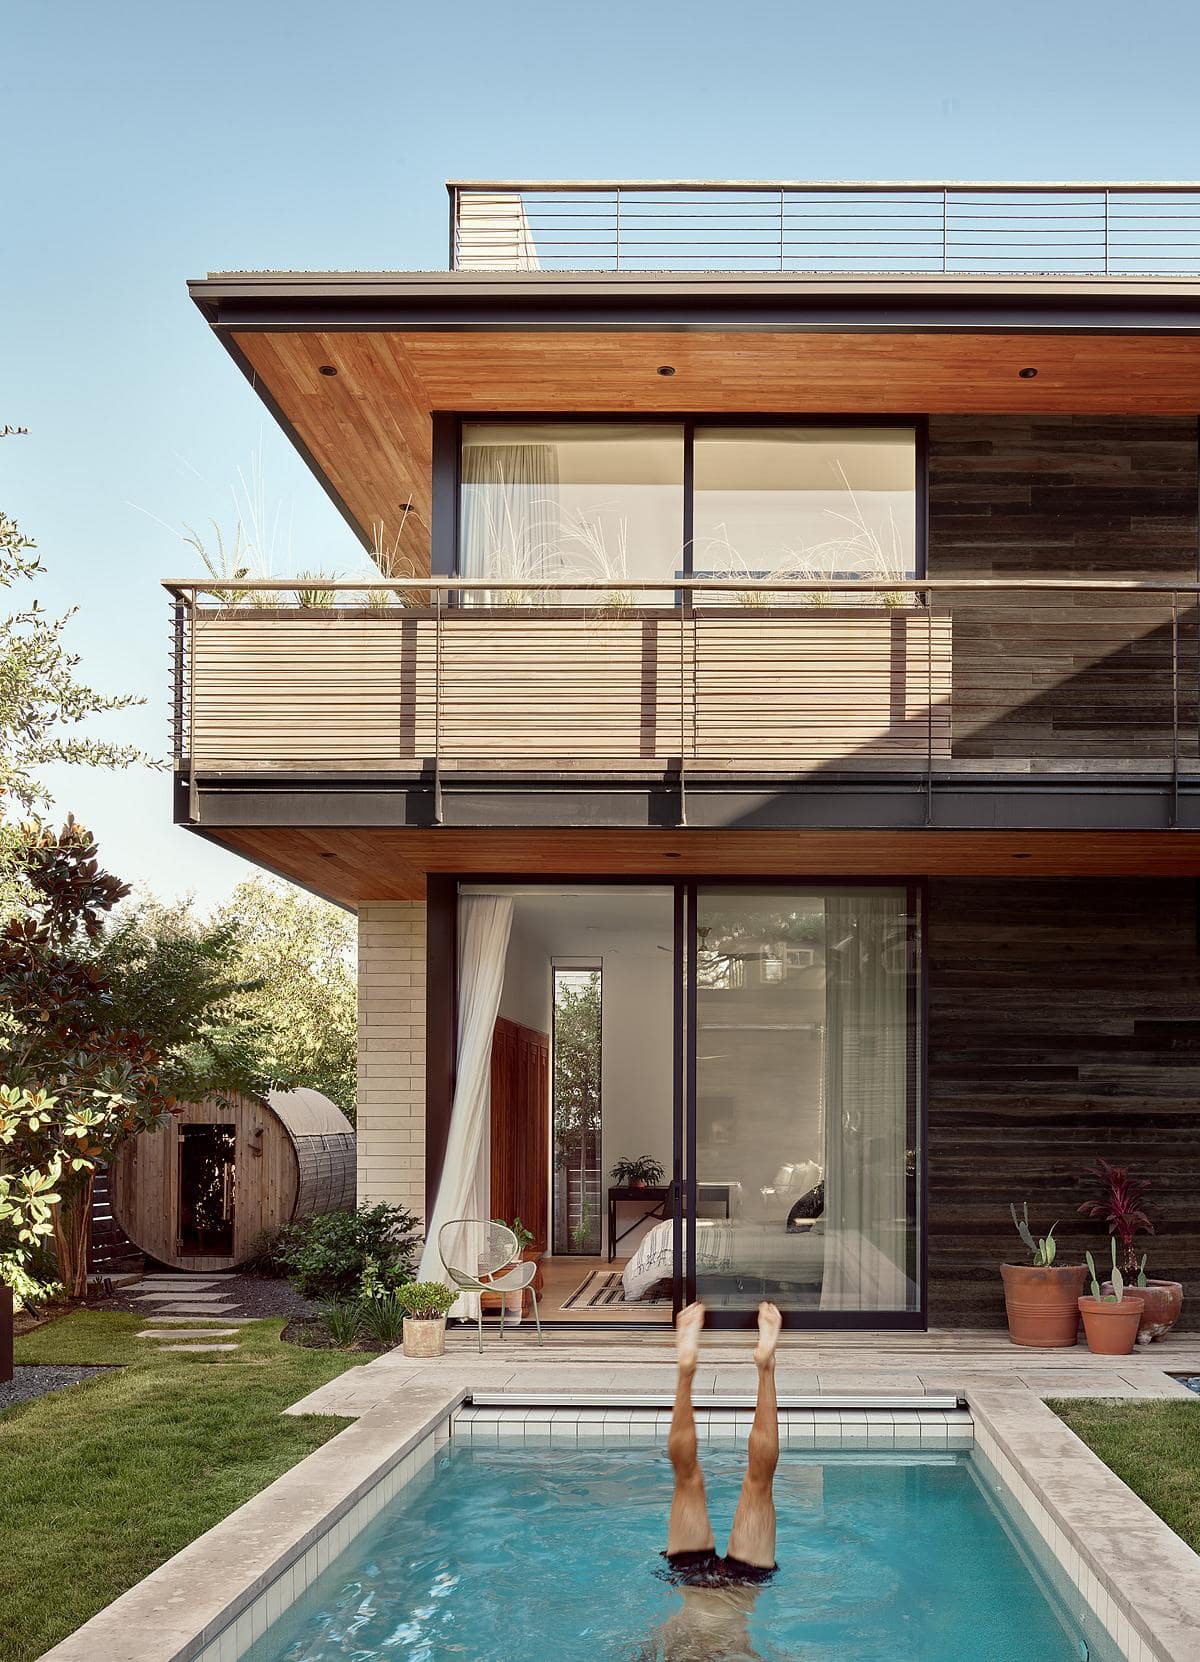 Hillmont Residence / Matt Garcia Design